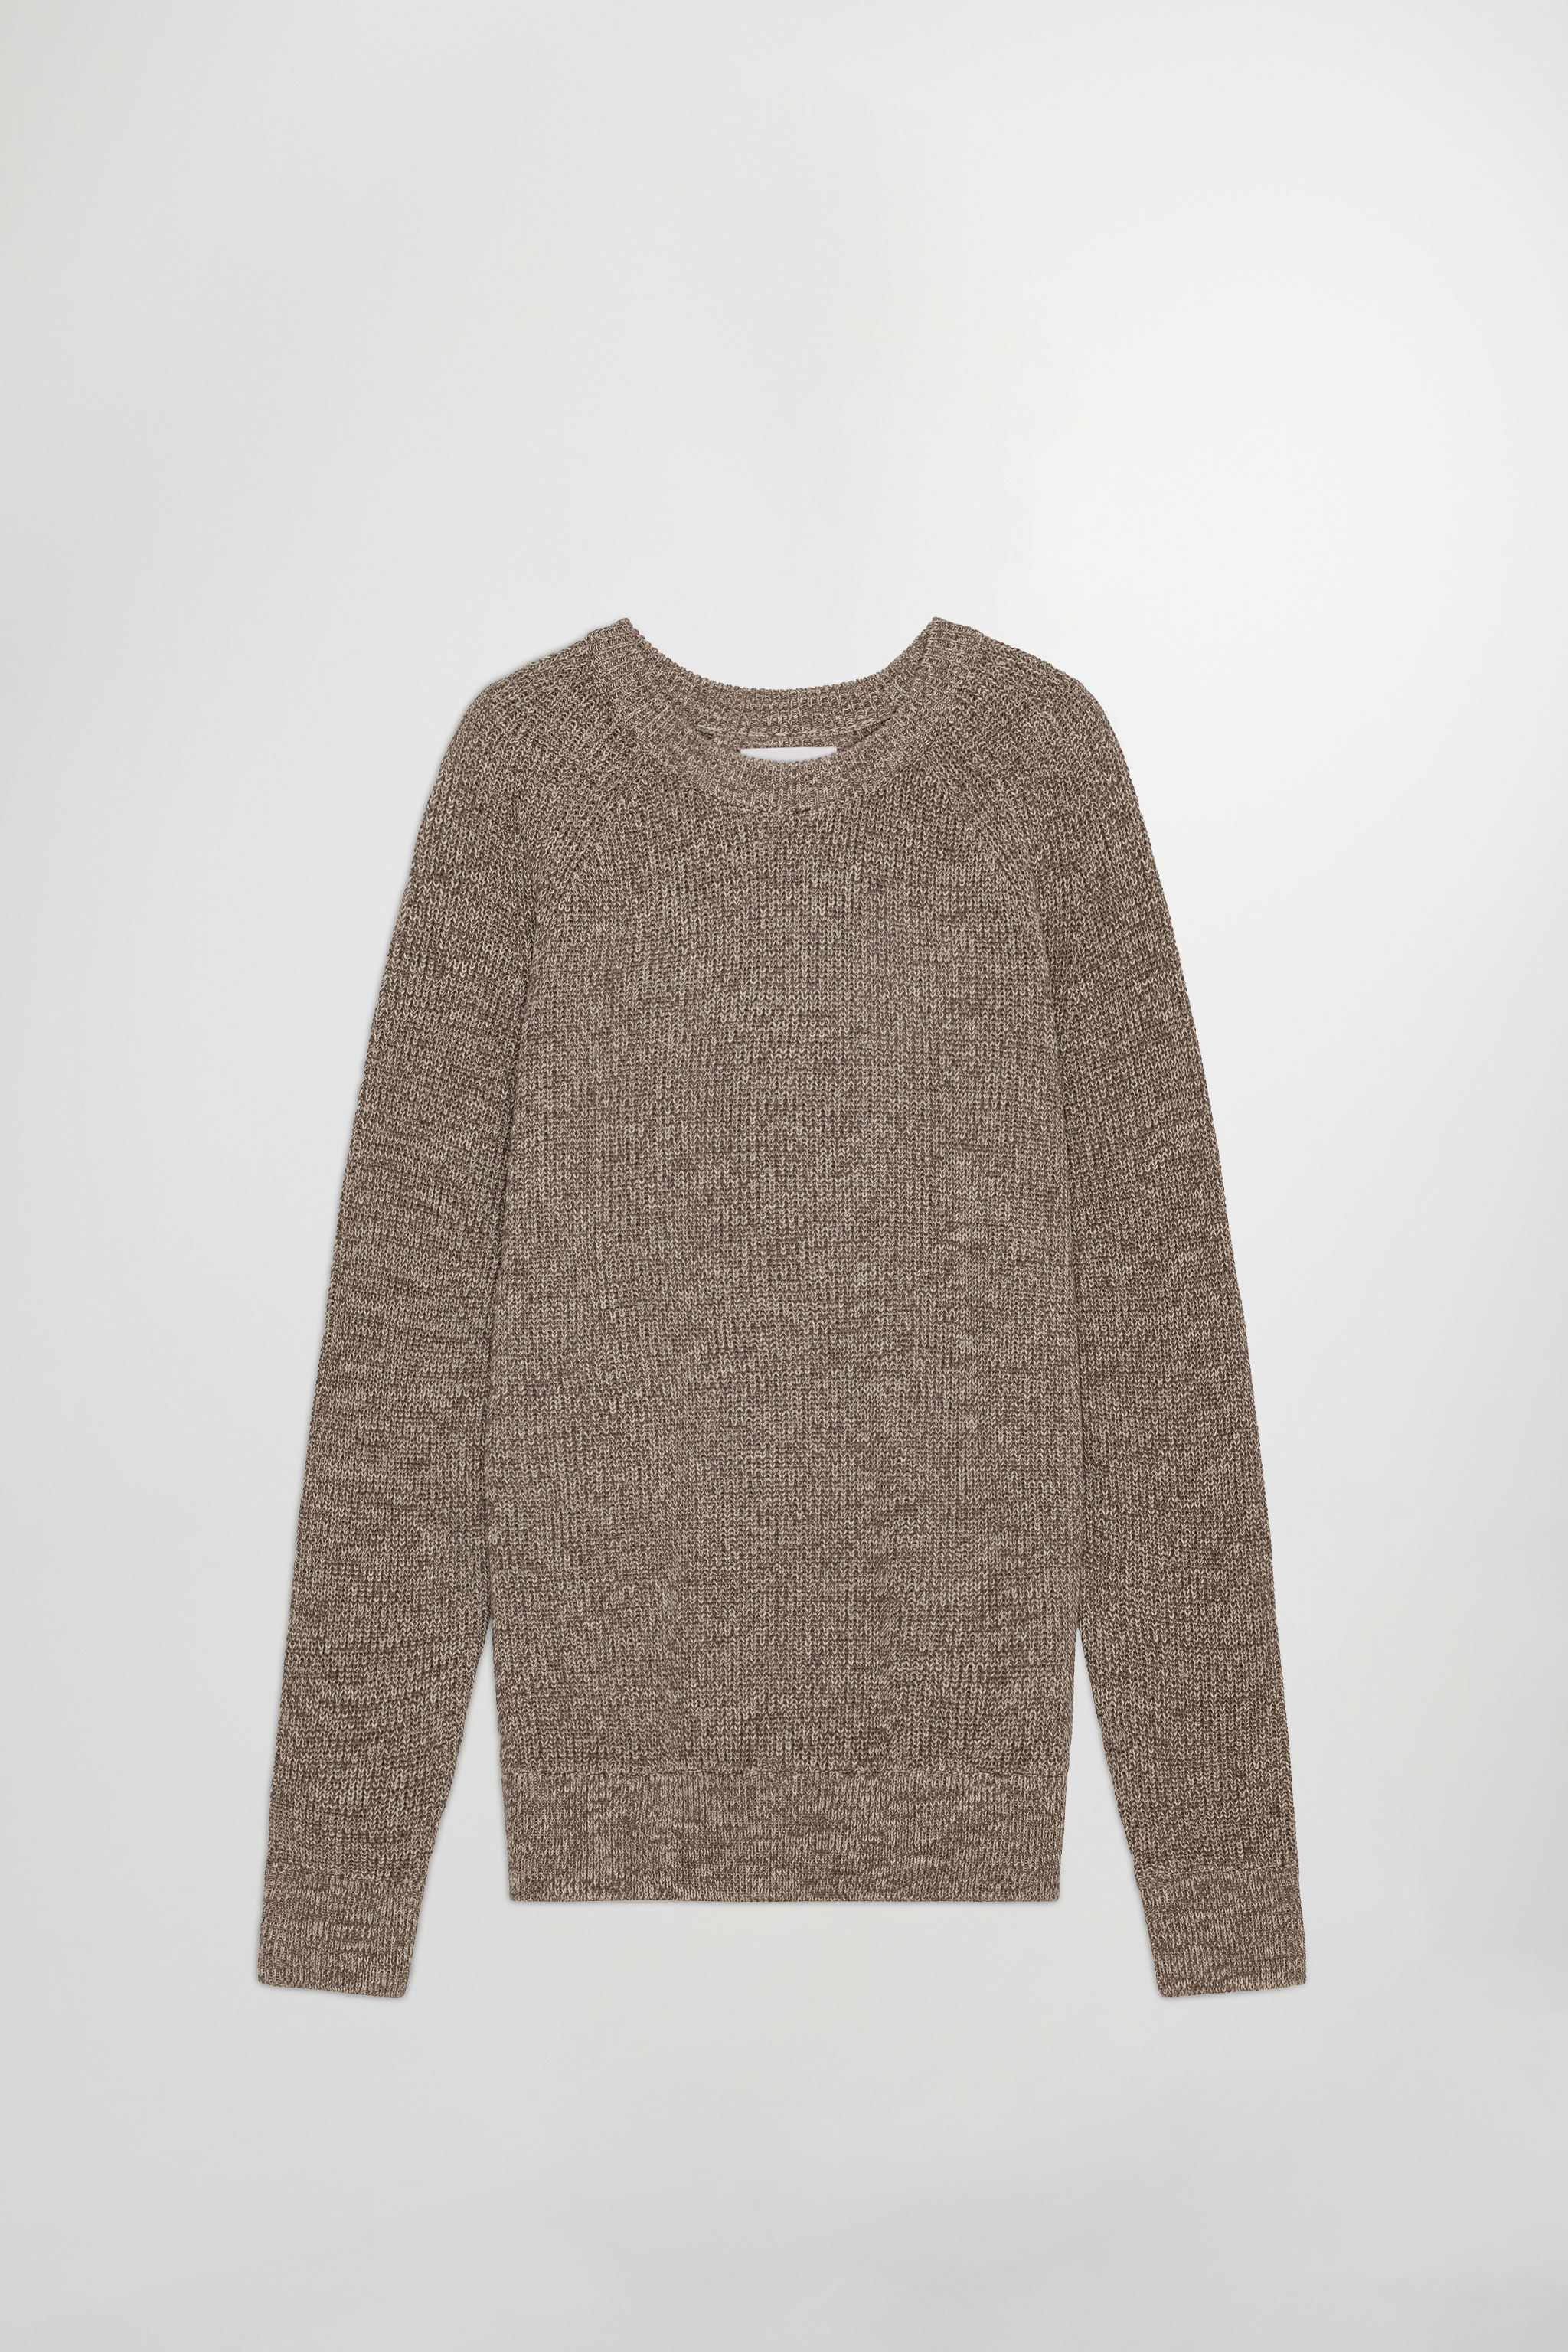 Crochet Crew 6523 men's sweater - White - Buy online at NN.07®